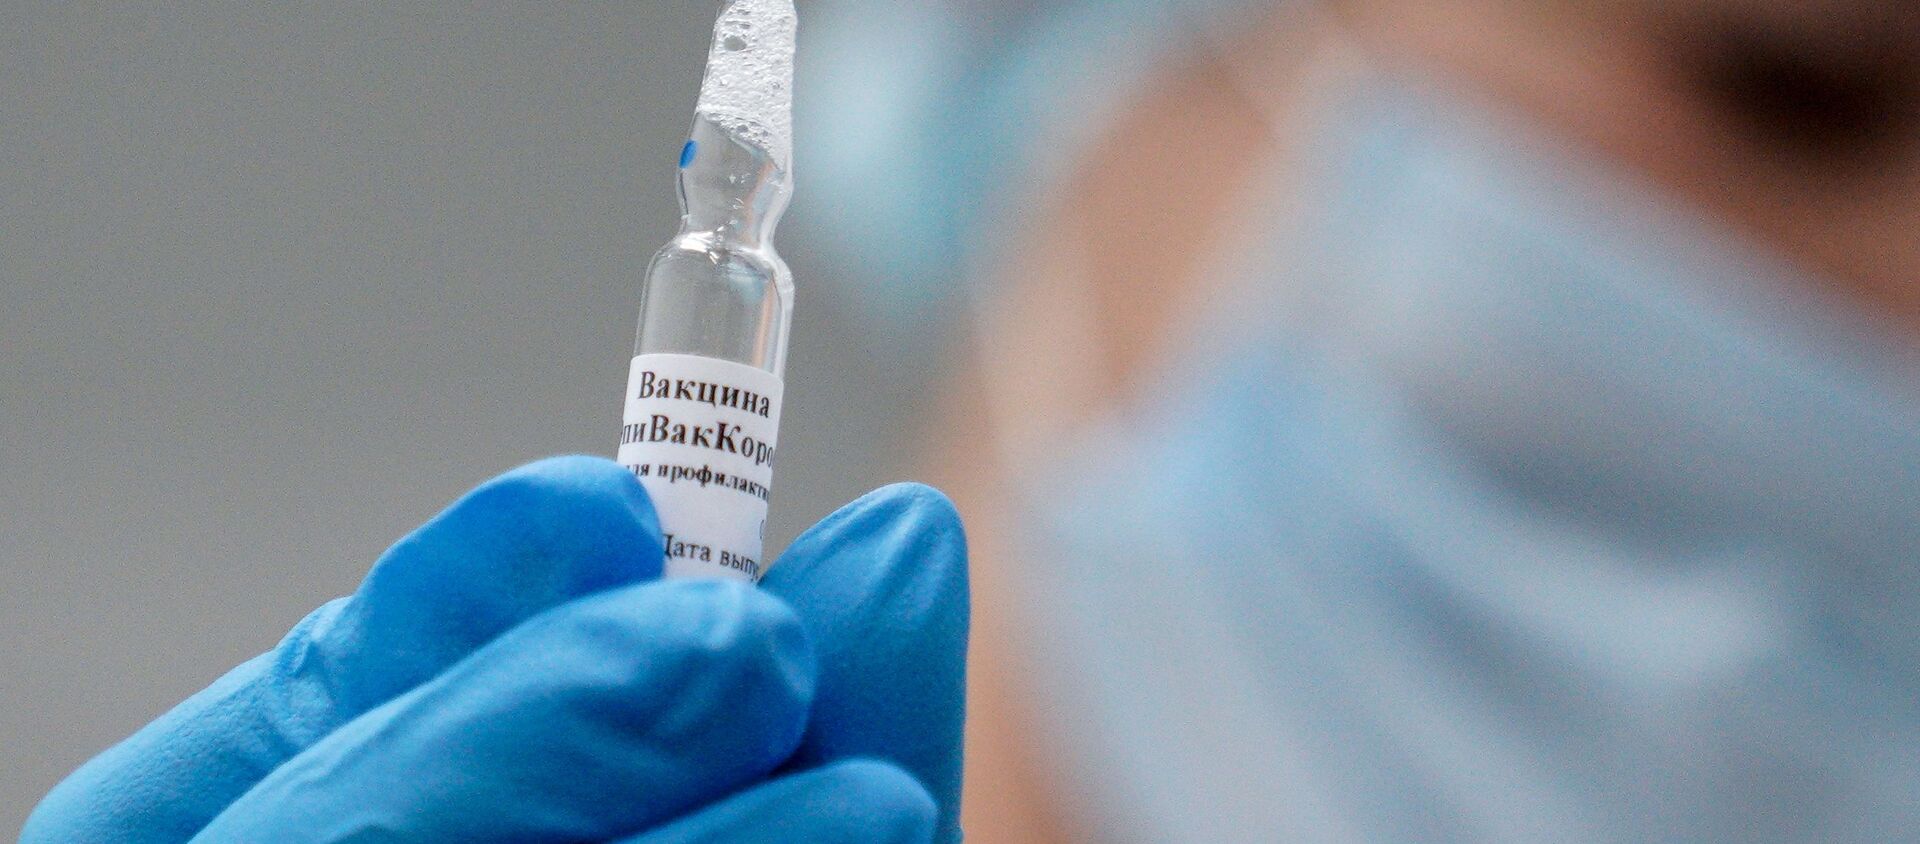  بدء التطعيم بـ لقاح إيبيفاك كورونا ضد فيروس كورونا في كالينينغراد، روسيا 3 ديسمبر 2020 - سبوتنيك عربي, 1920, 29.12.2020